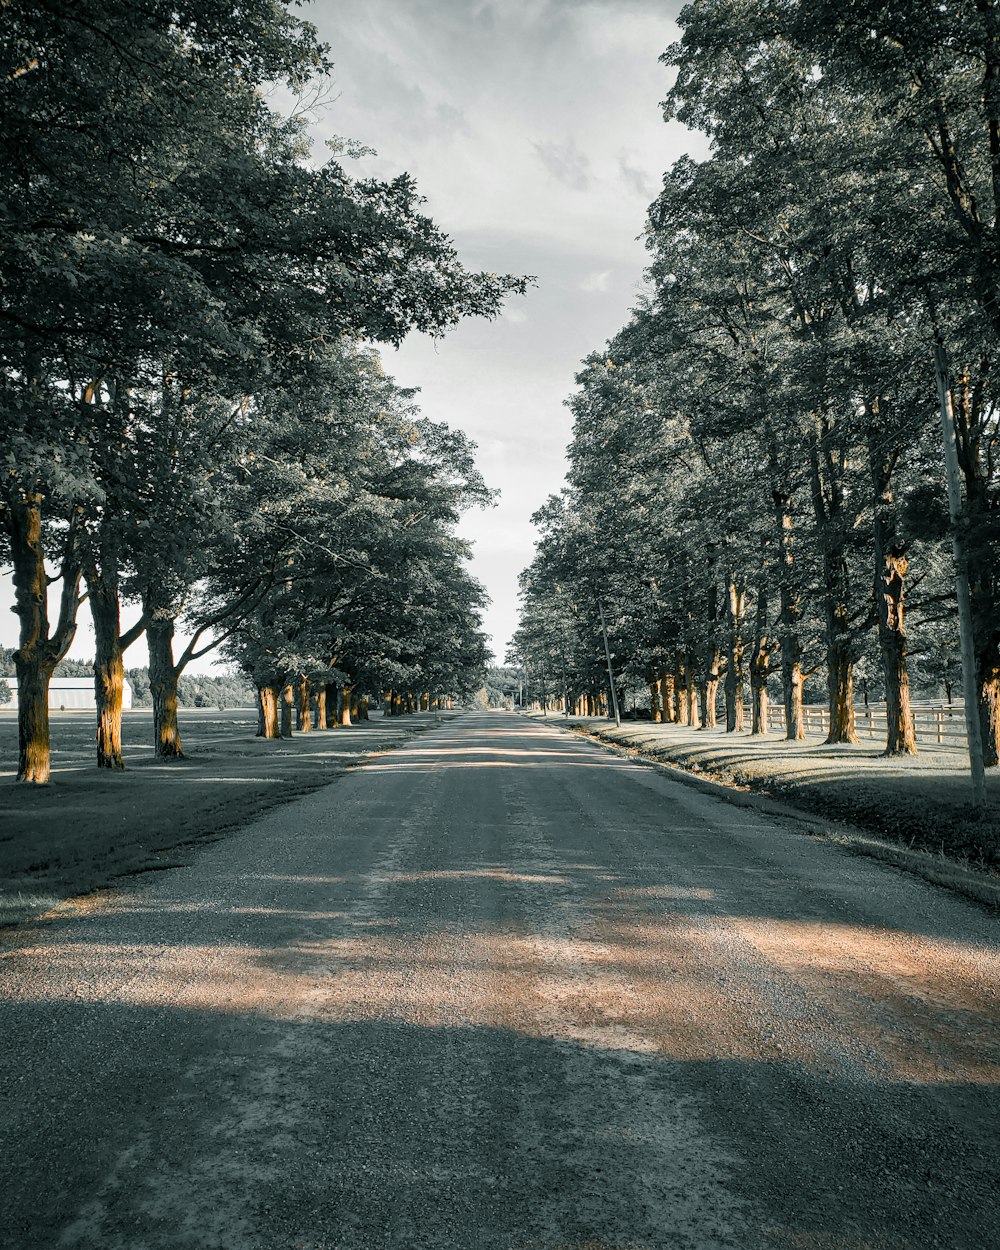 Carretera de asfalto gris entre árboles durante el día